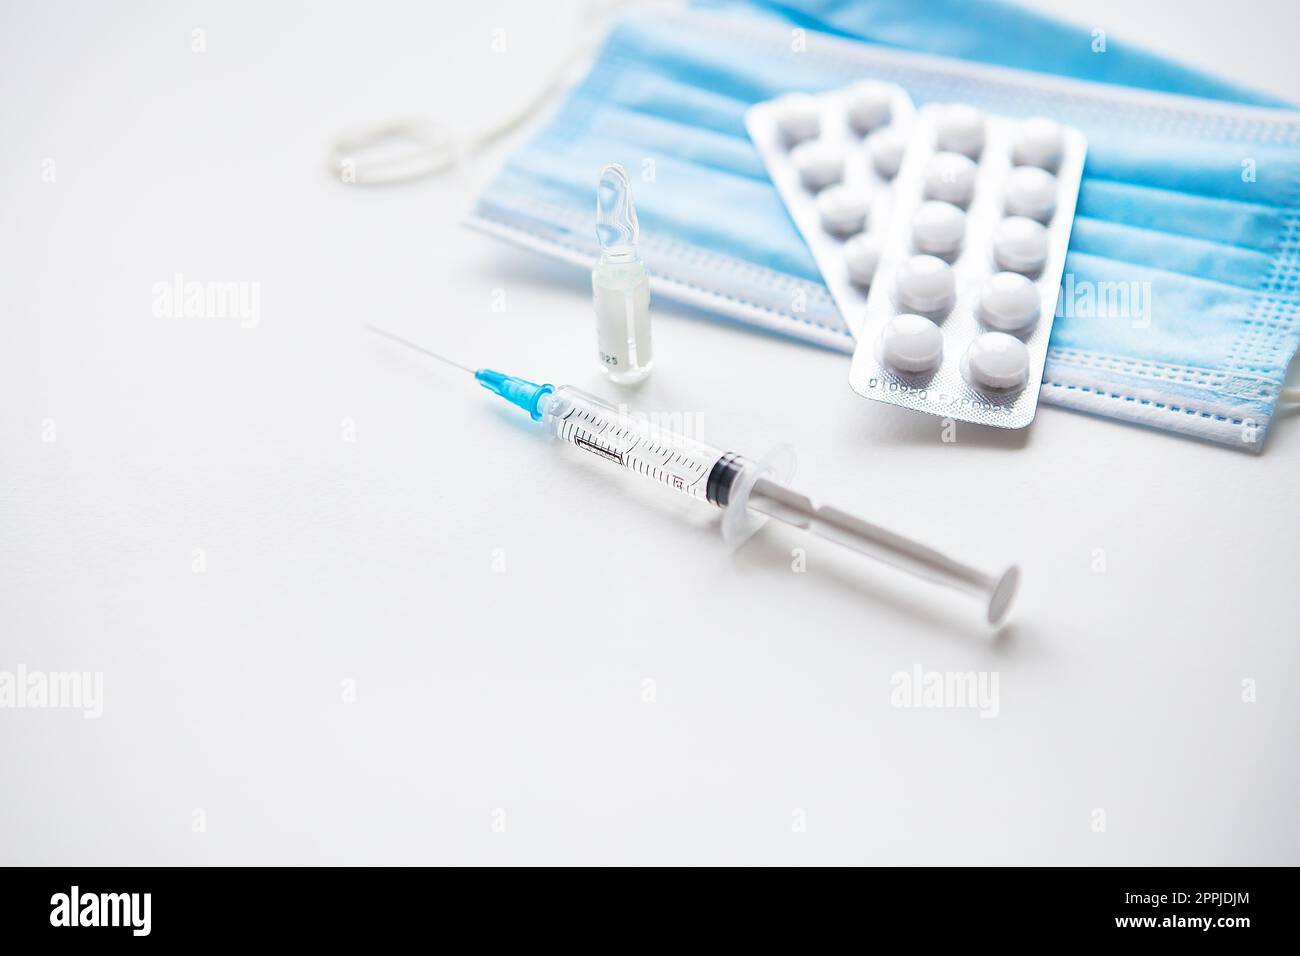 Vorbereitung zur Impfung gegen Covid-19. Spritze, Impfstoff, Pillen, medizinische Maske. Stockfoto